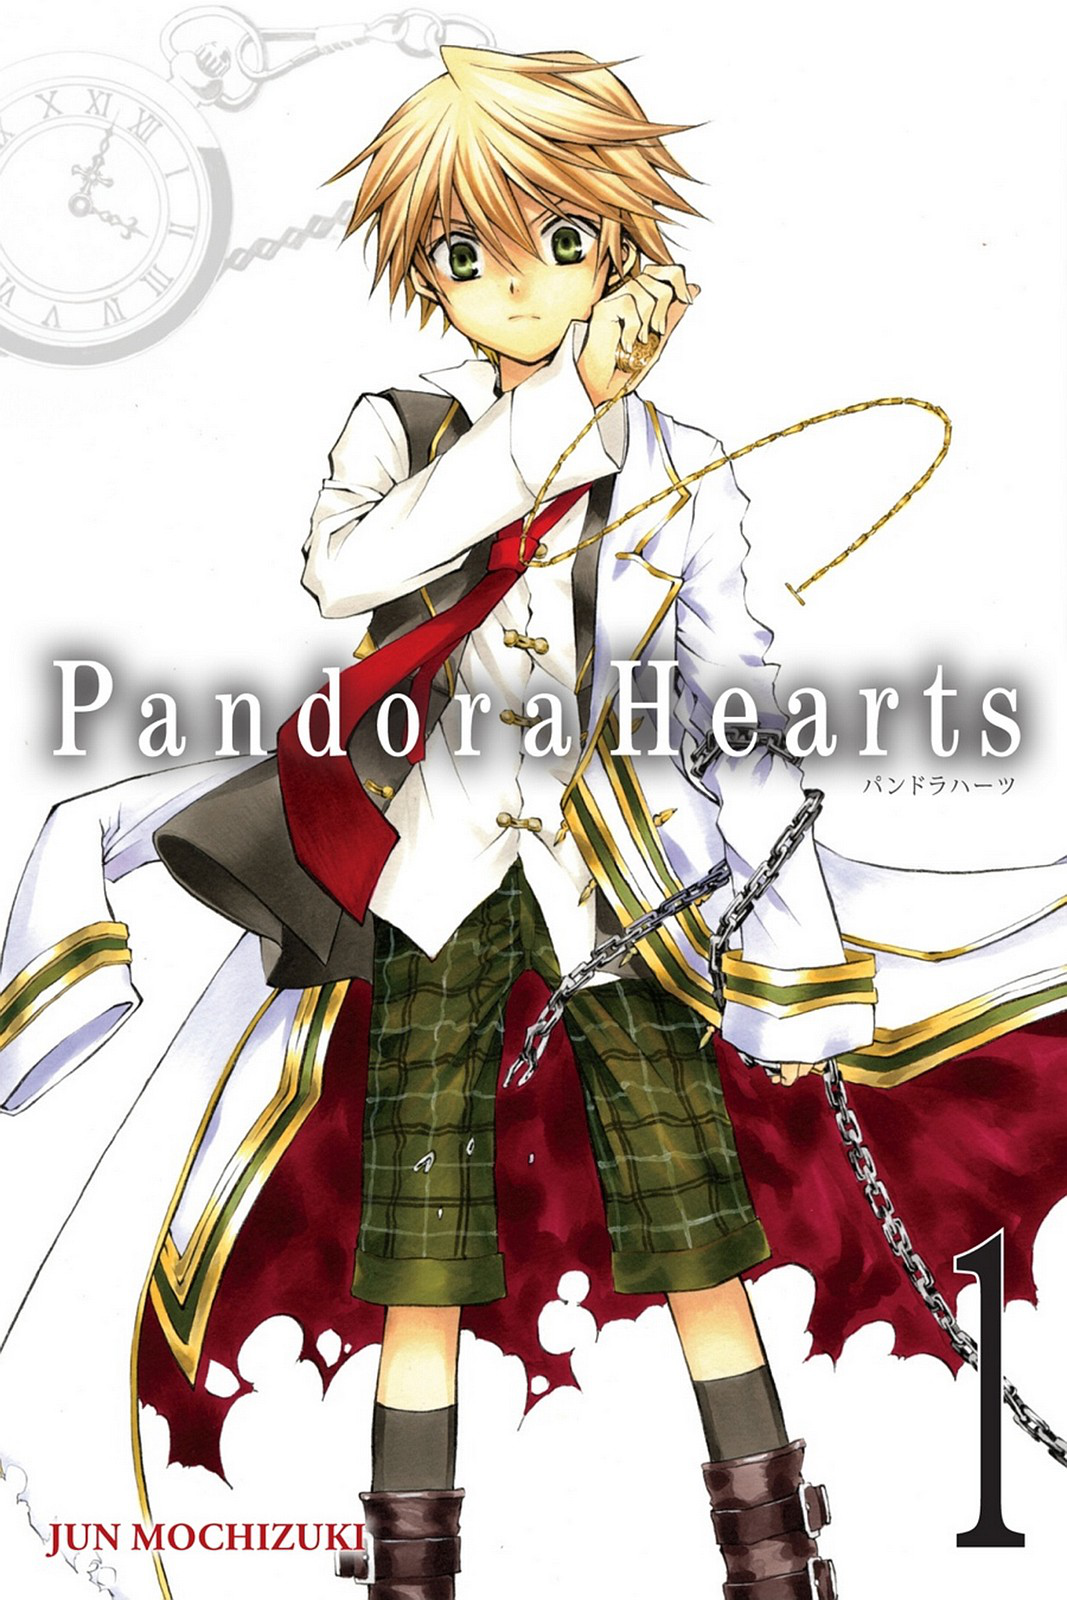 Pandora Hearts Manga Chapters | Pandora Hearts Manga English - Anime Wall  Art Print - Aliexpress